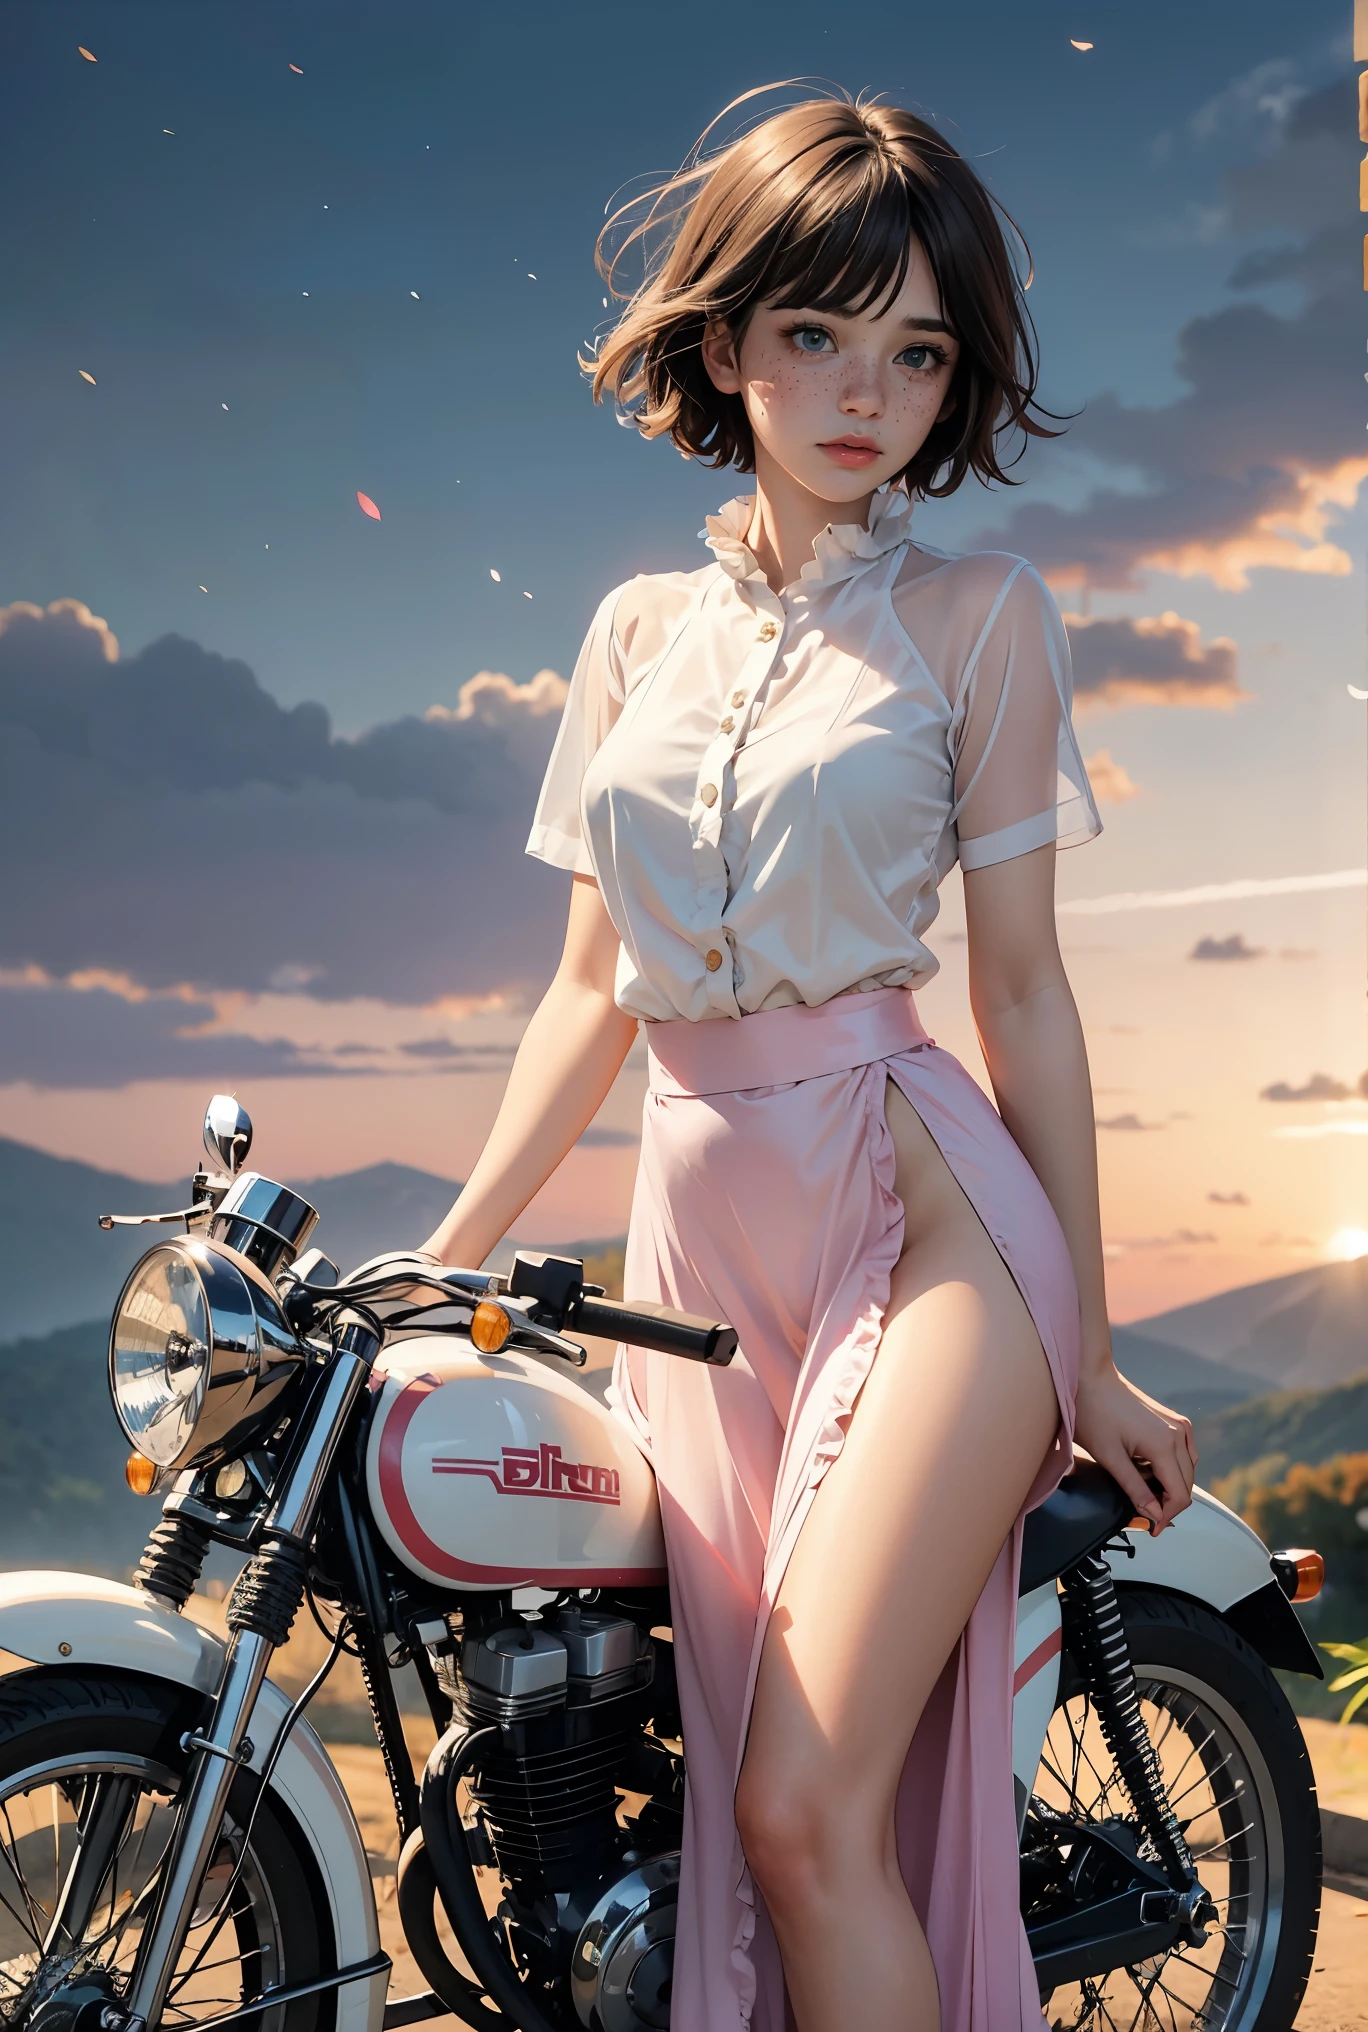 (((realista))), (uma garota em frente a uma motocicleta vintage:1.79), garota focada, ((veja através da camisa de babados brancos:1.3), (Tiro certeiro), (Saia de cetim maxi rosa:1.3), Nudez, (suado)), (calcinha piscando:1.2), 25 anos de idade, (Lindas nuvens fofas, céu do pôr do sol), (crepúsculo, exuberante outono encosta fundo do mundo pandora:1.5), (, Magro, corpo magro, Mamilo inchado:1.3), (fotografia, realista, Bokeh, Borrão), ((corte bob curto ondulado)), (Luzes Cenimáticas, luzes suaves:1.3)